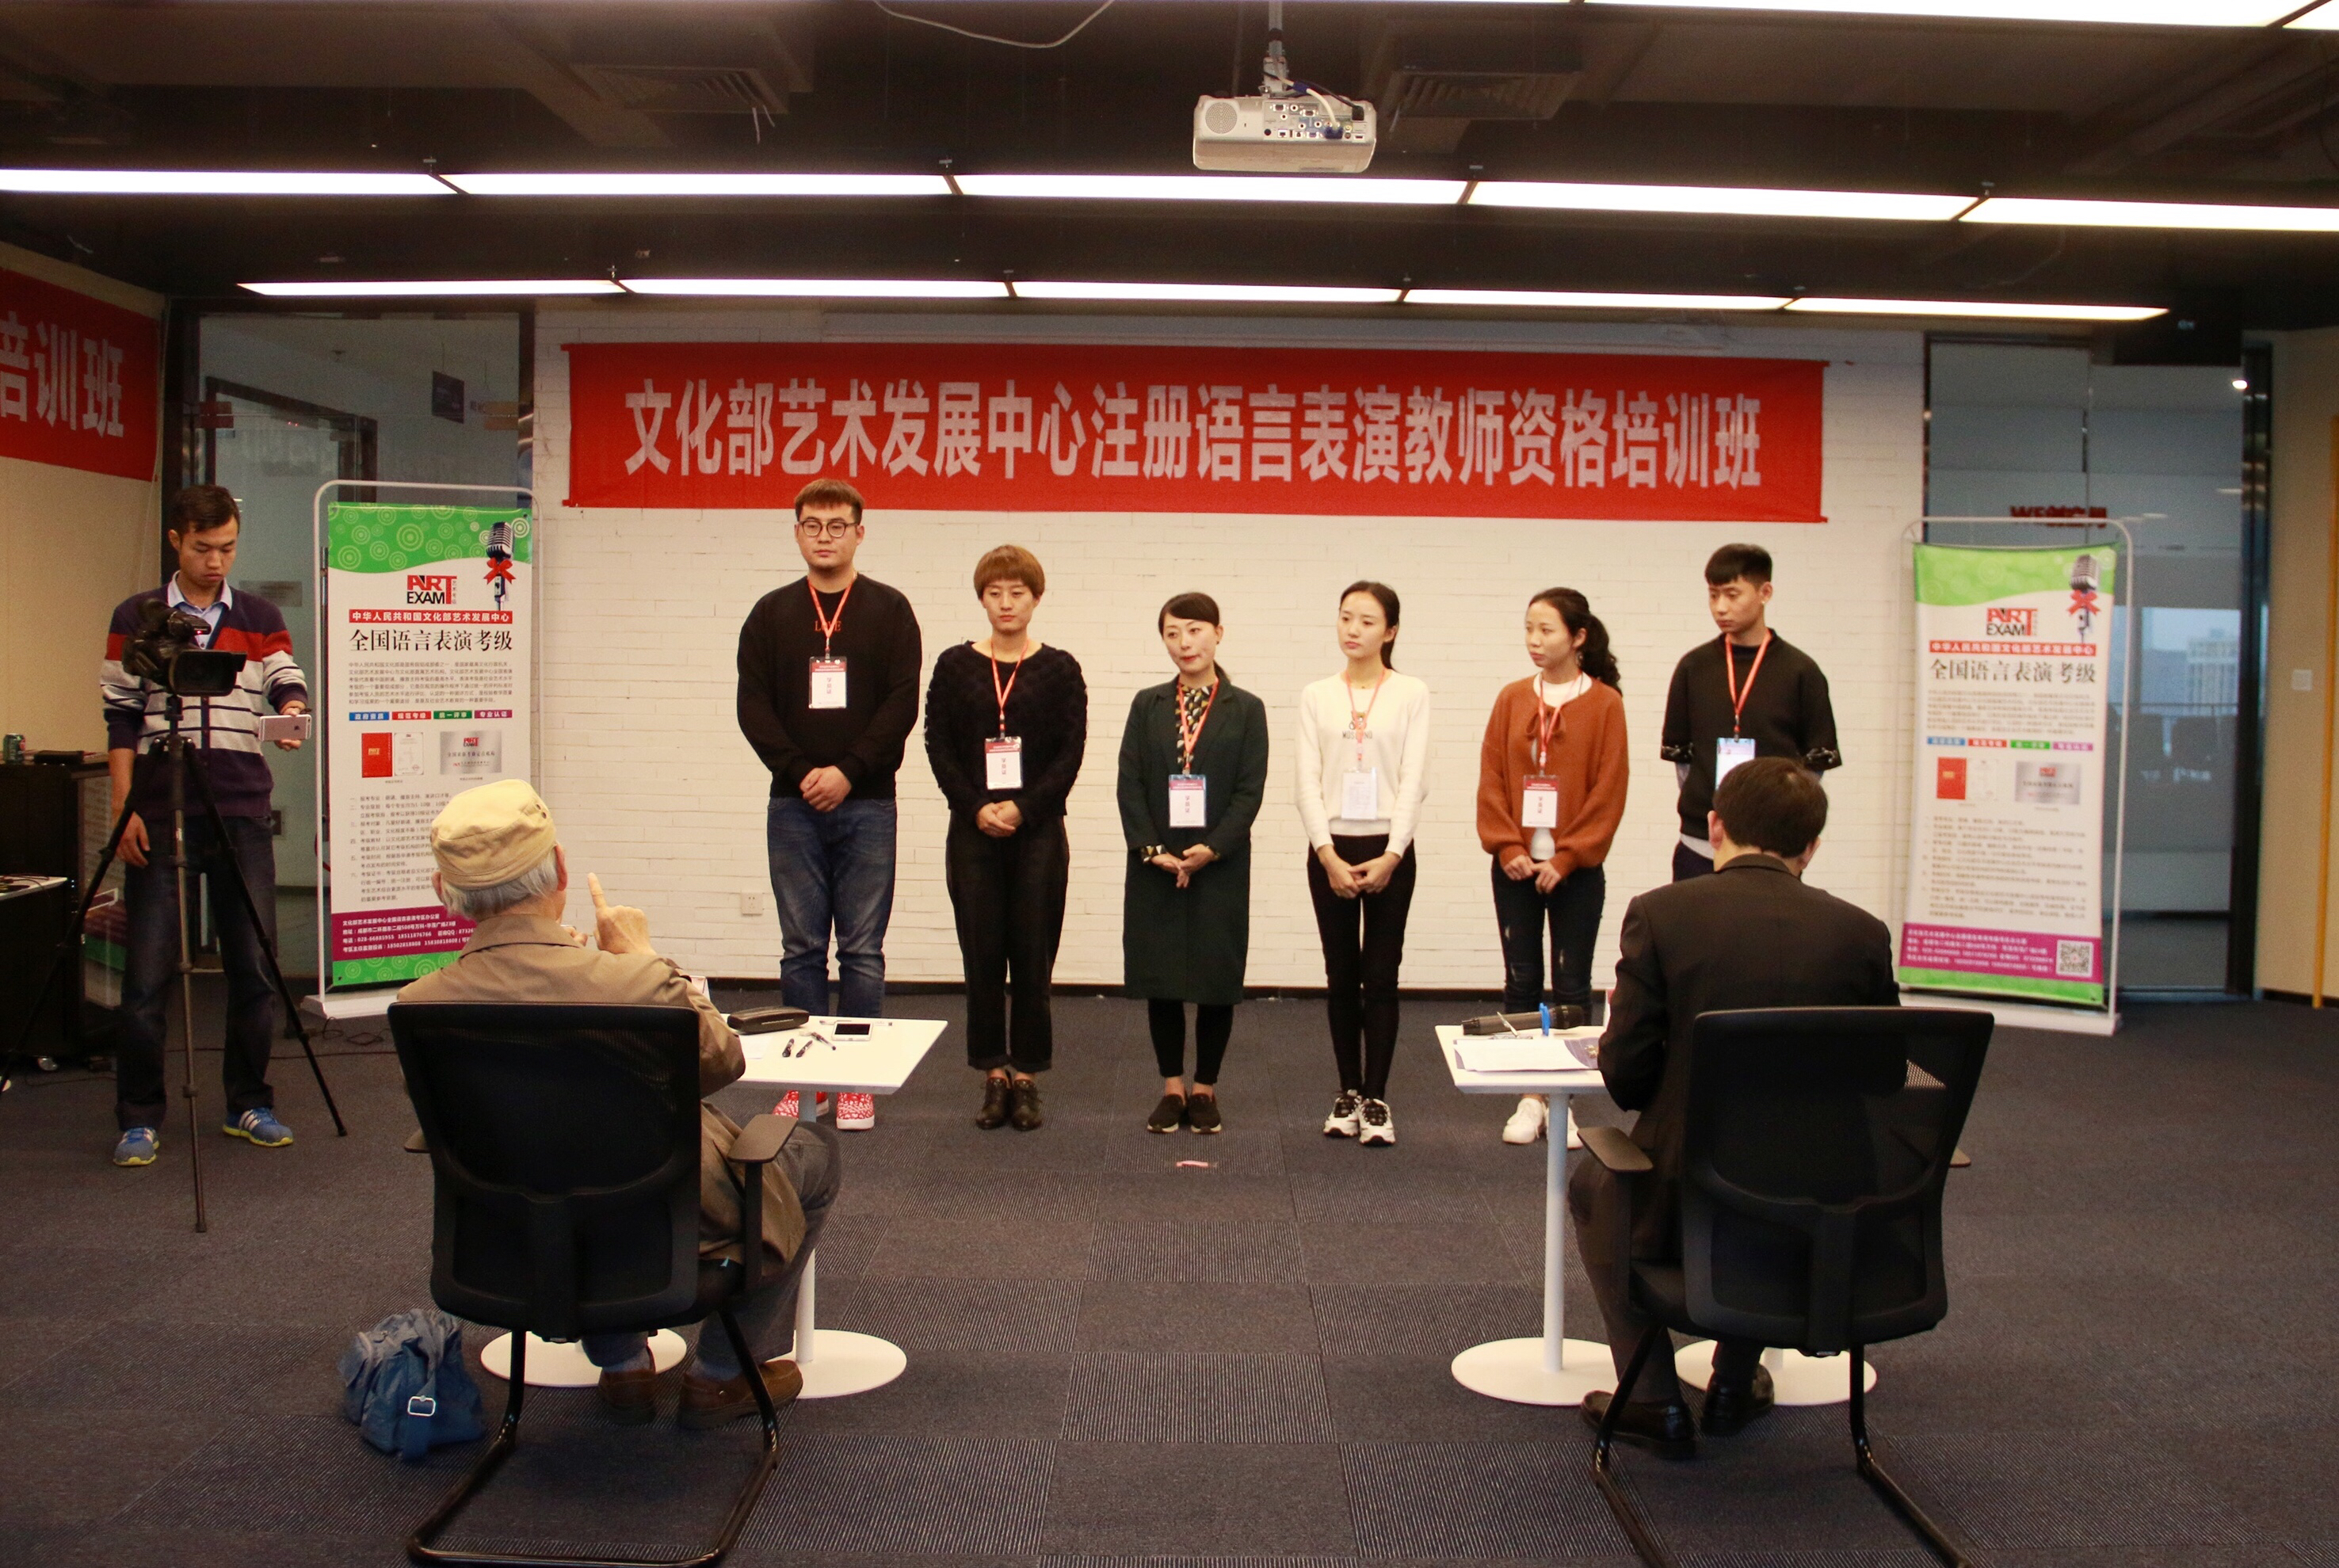 文化部艺术发展中心注册语言表演教师资格培训班在蓉举办